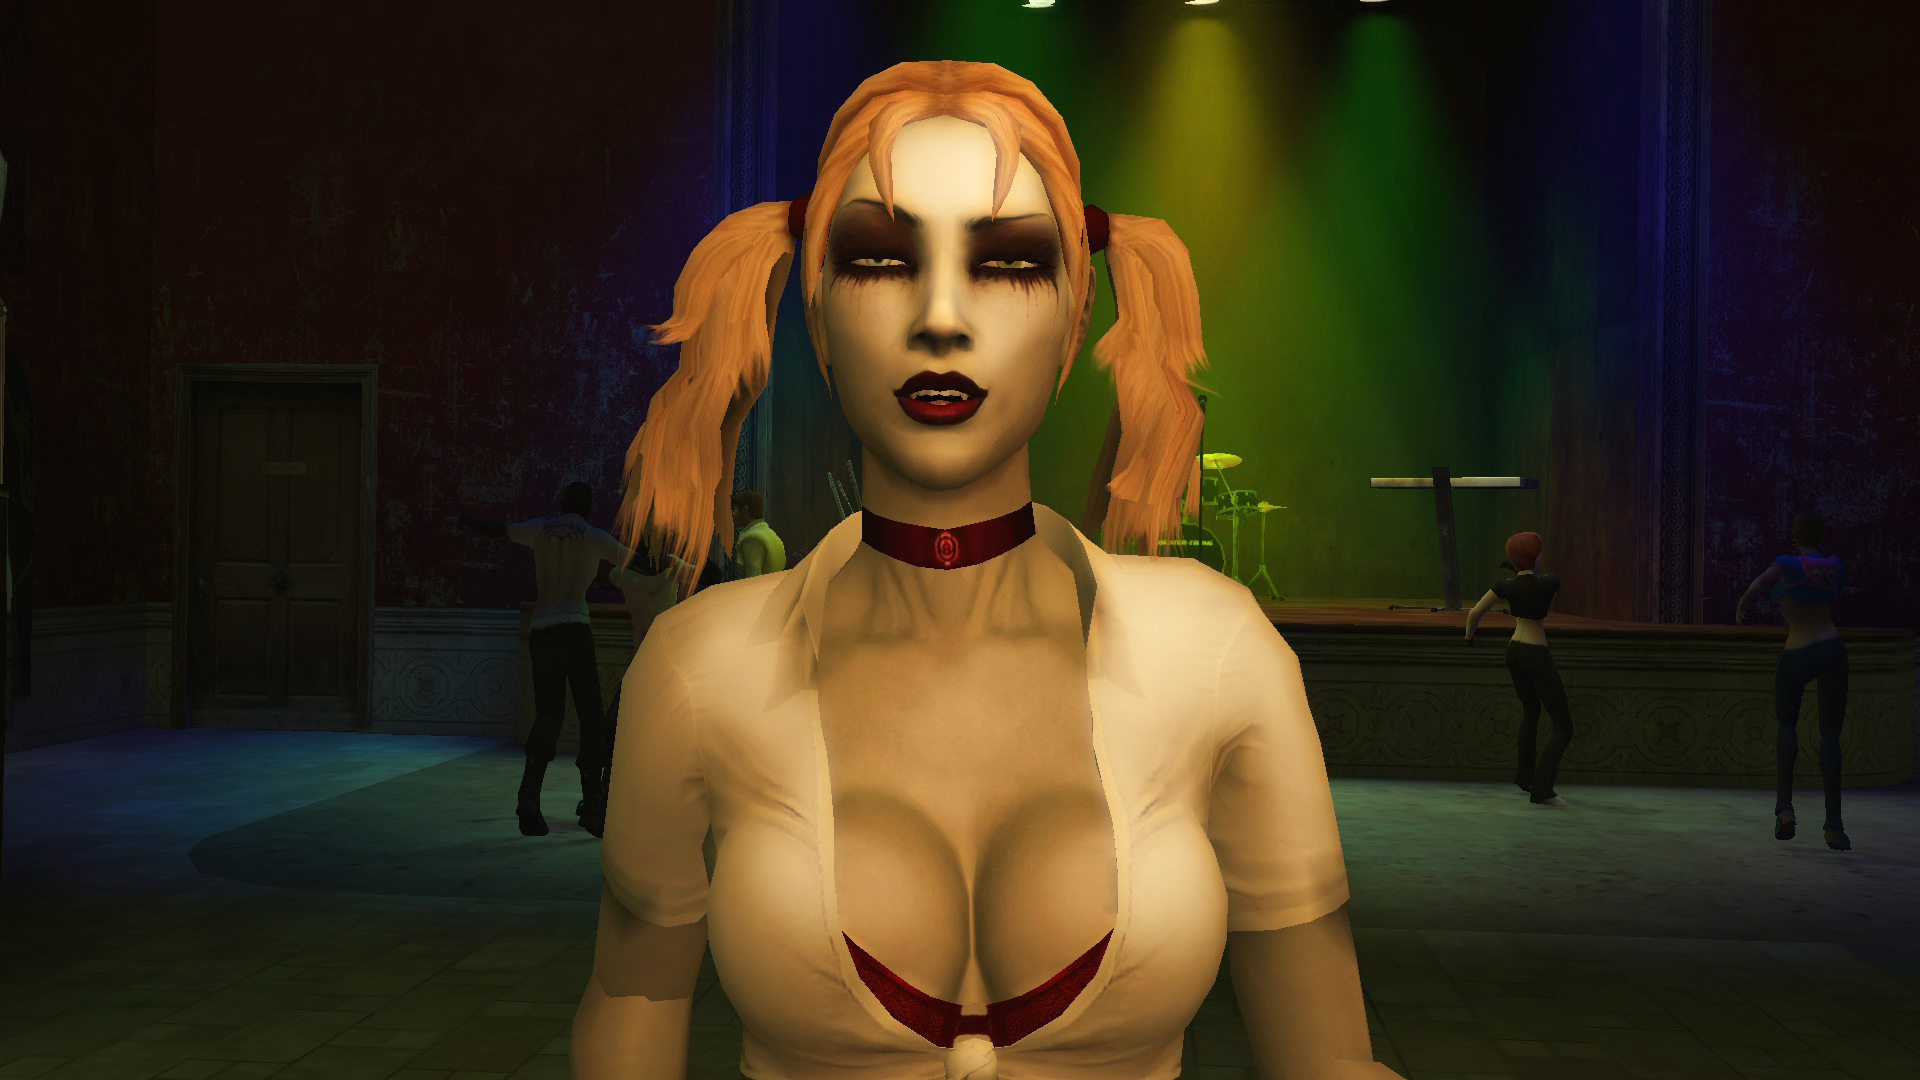 Jeanette Voerman, Vampavian Vampire, ing salah sawijining game vampir paling apik - Vampire: Daya Daya Masquerade